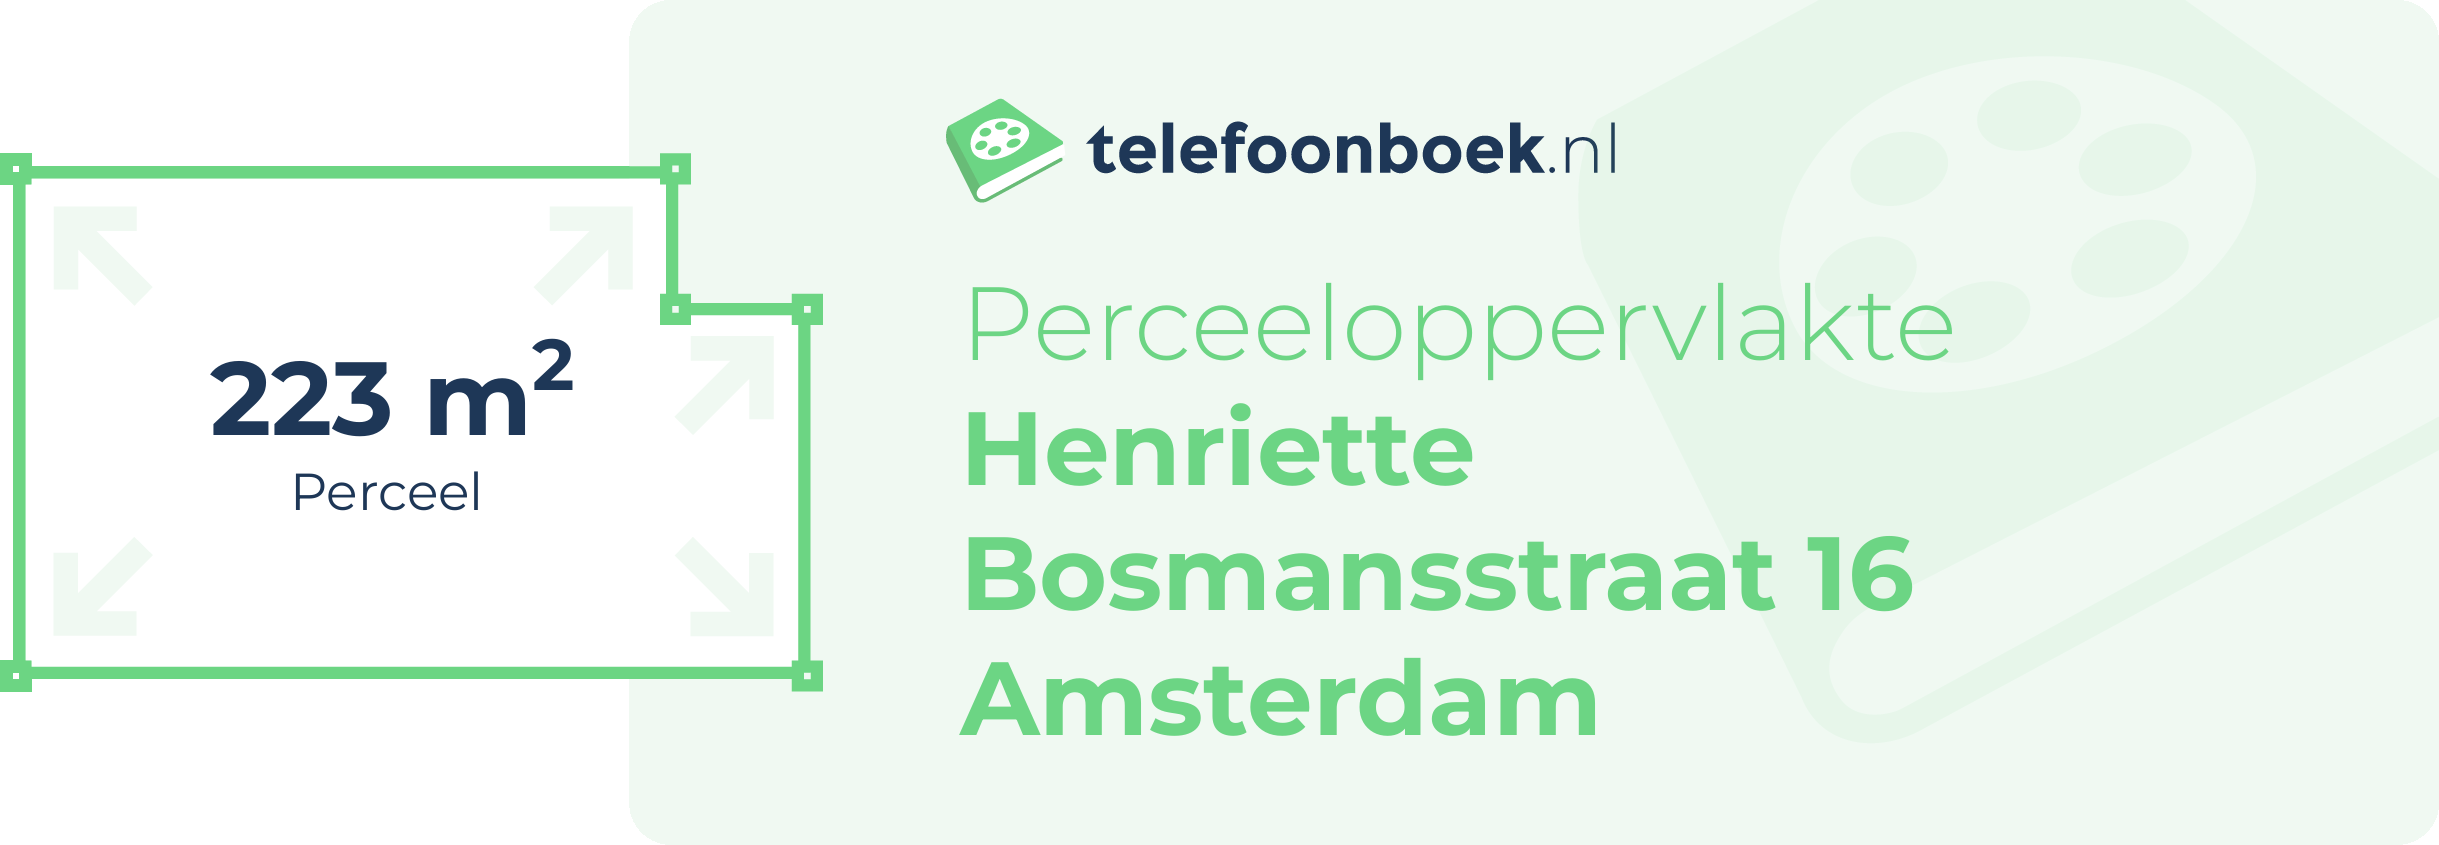 Perceeloppervlakte Henriette Bosmansstraat 16 Amsterdam